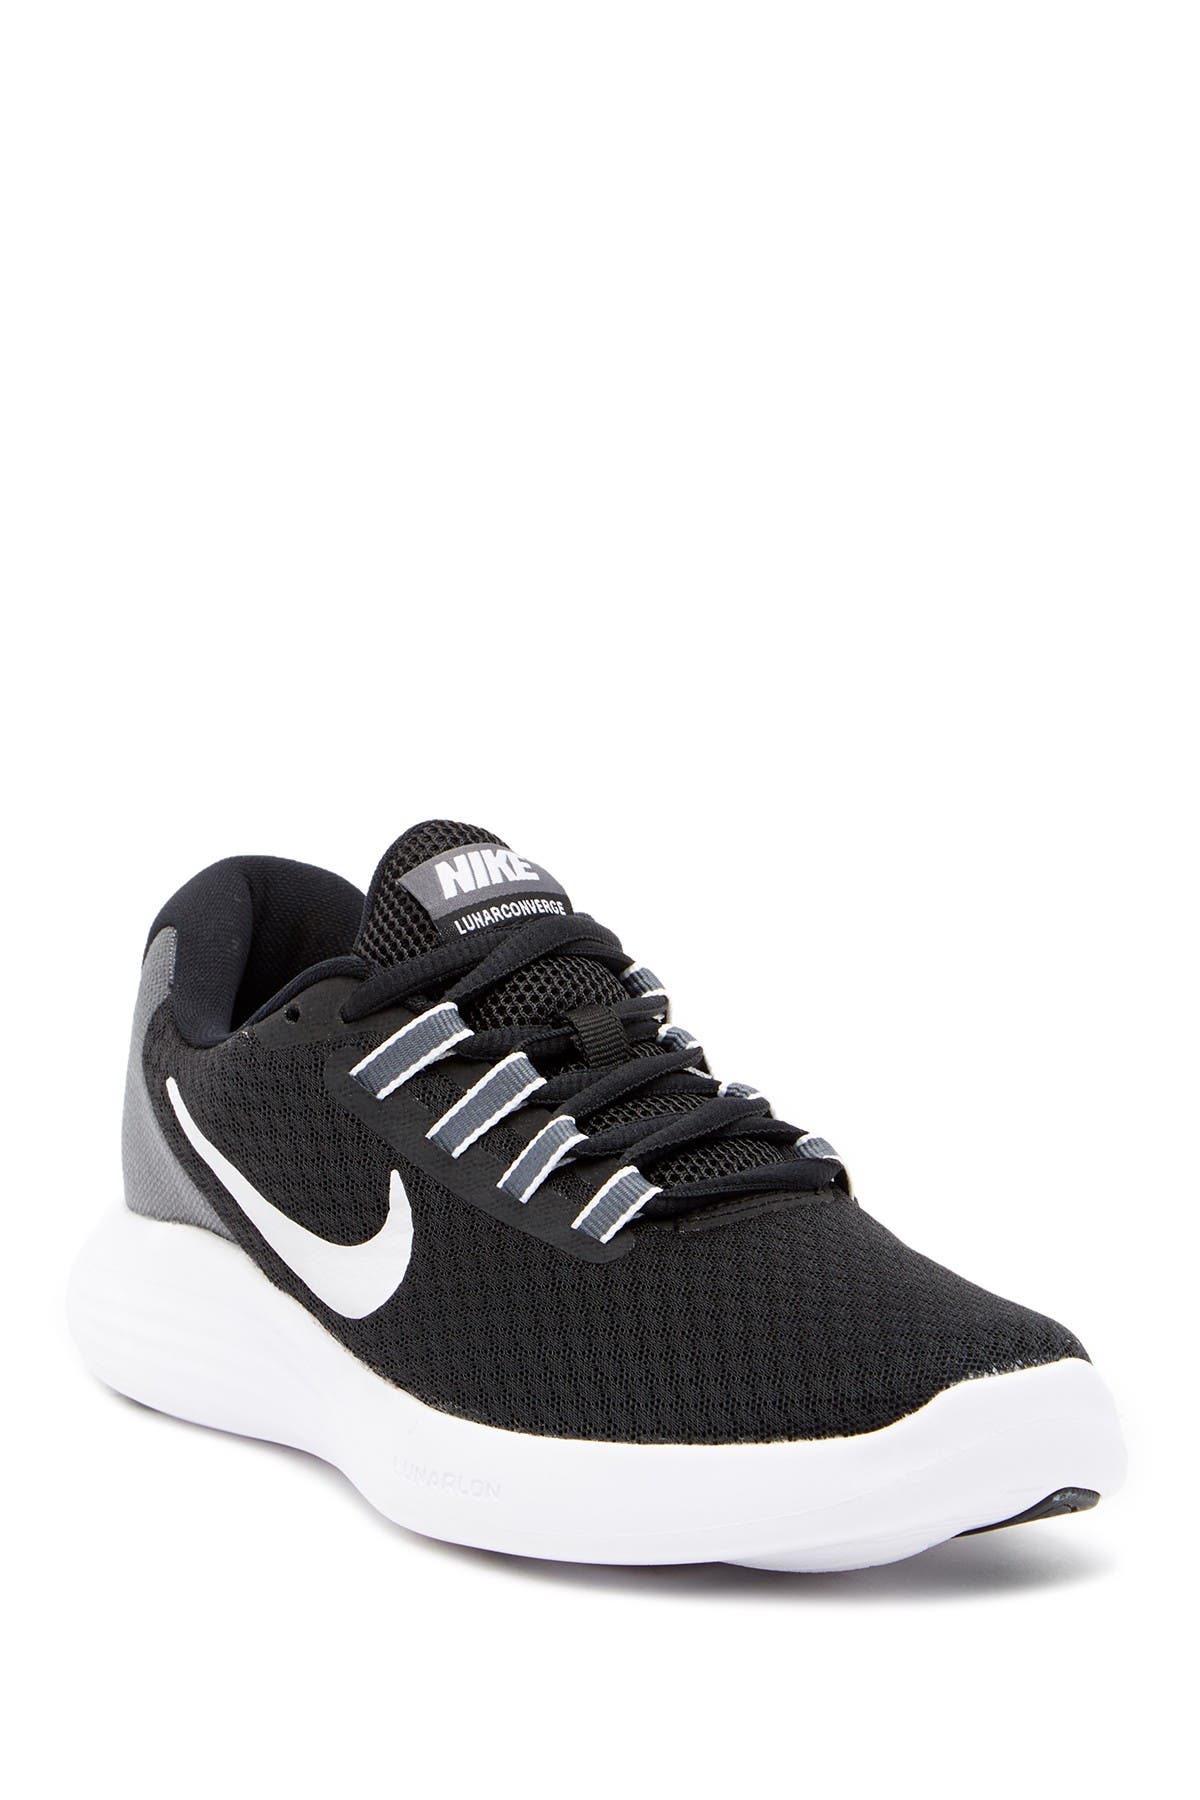 Nike | Lunarconverge Running Sneaker 